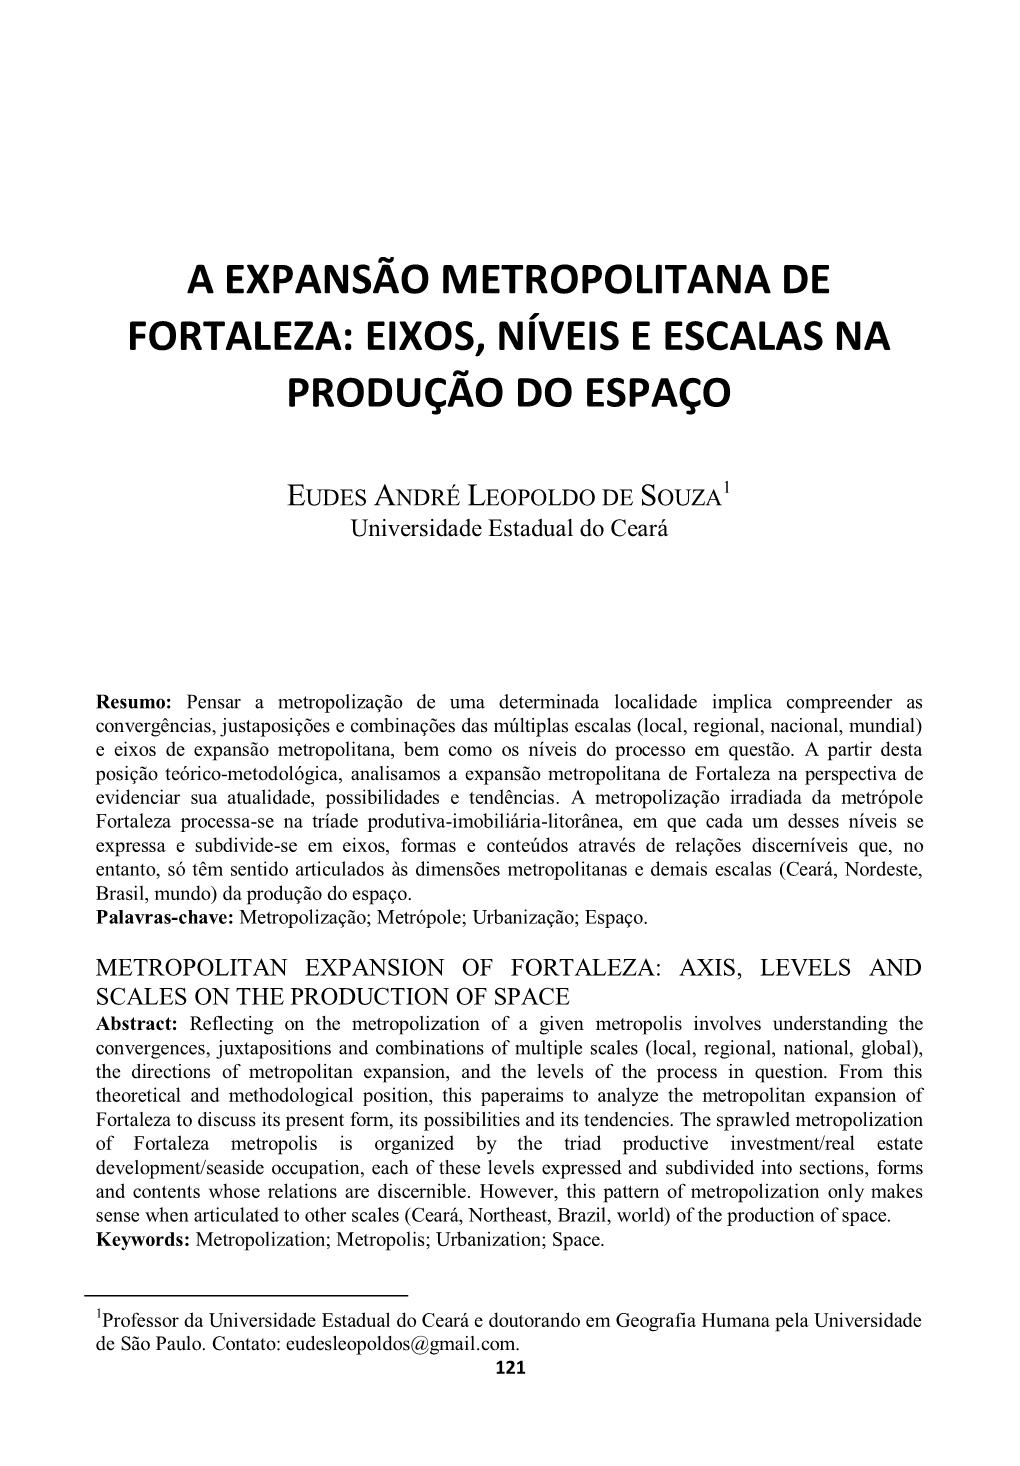 A Expansão Metropolitana De Fortaleza: Eixos, Níveis E Escalas Na Produção Do Espaço